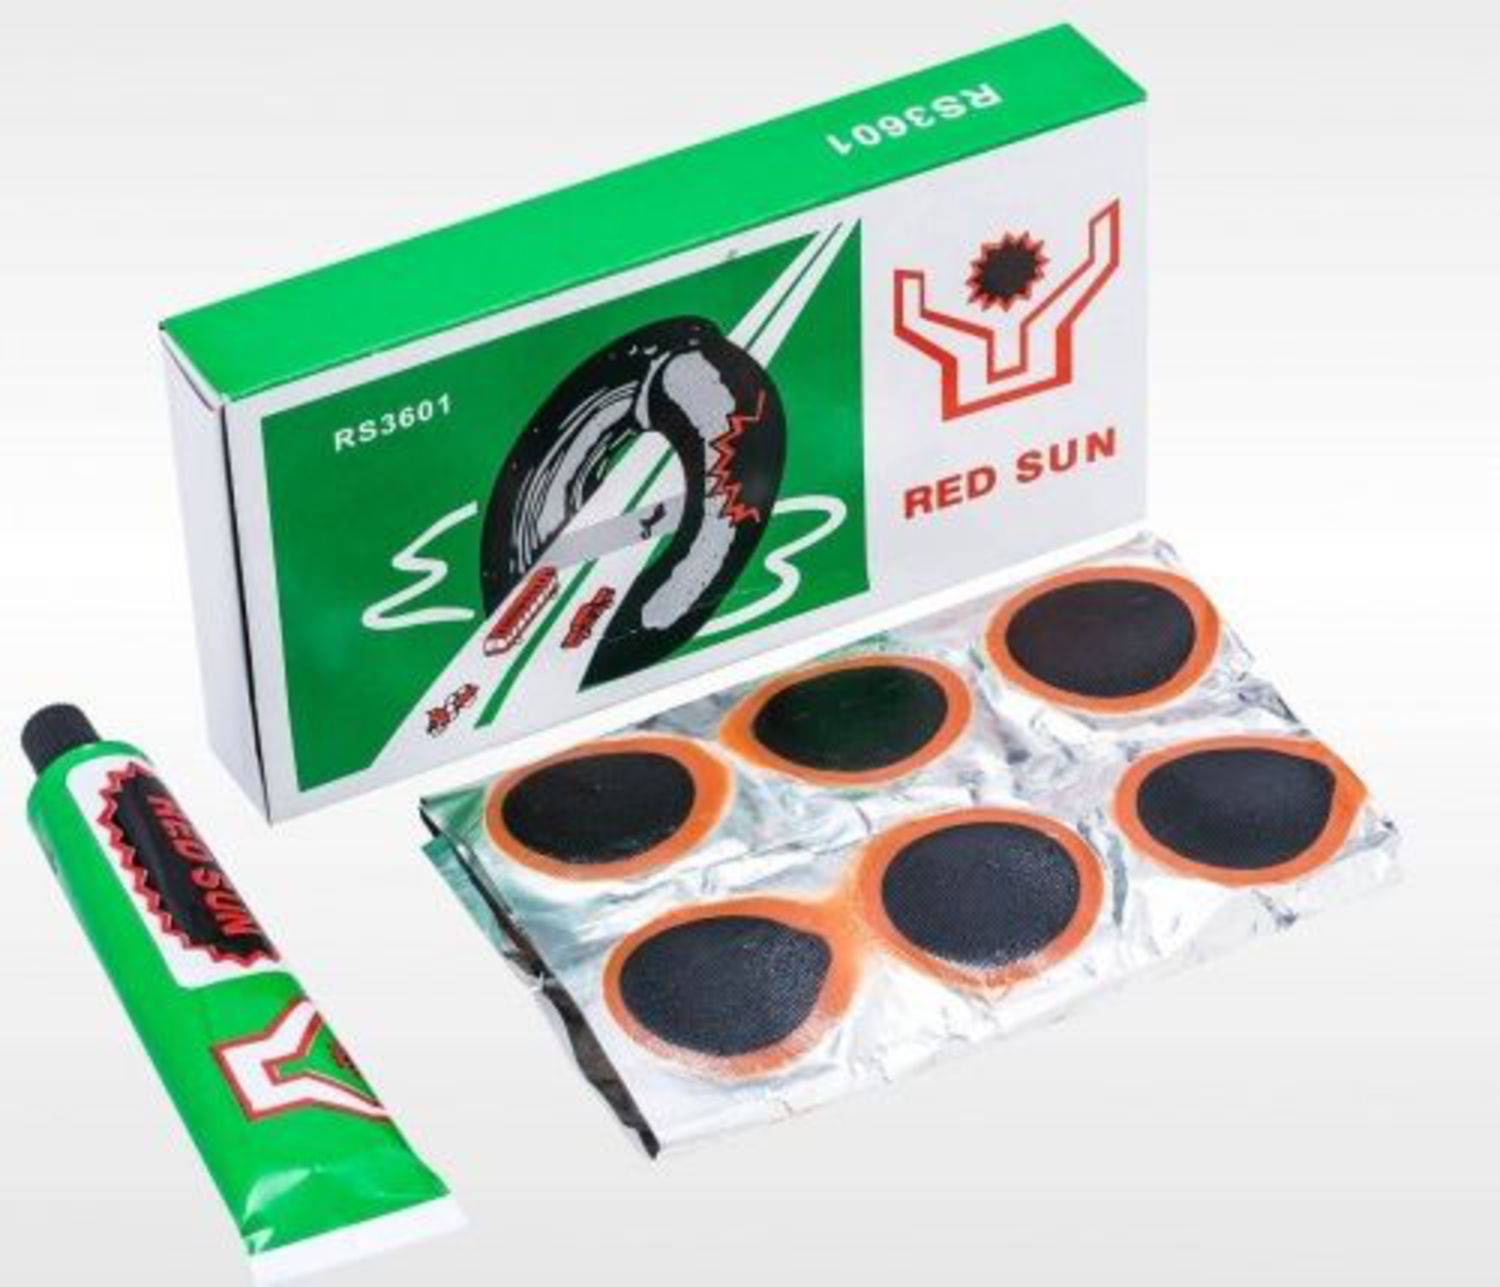 Авто заплатки. Велоаптечка Red Sun rs3601. Red Sun латки rs3601 тюбик. Набор для ремонта камеры 36 заплаток rs3601. Латки для камер велосипеда Red Sun rs3601.